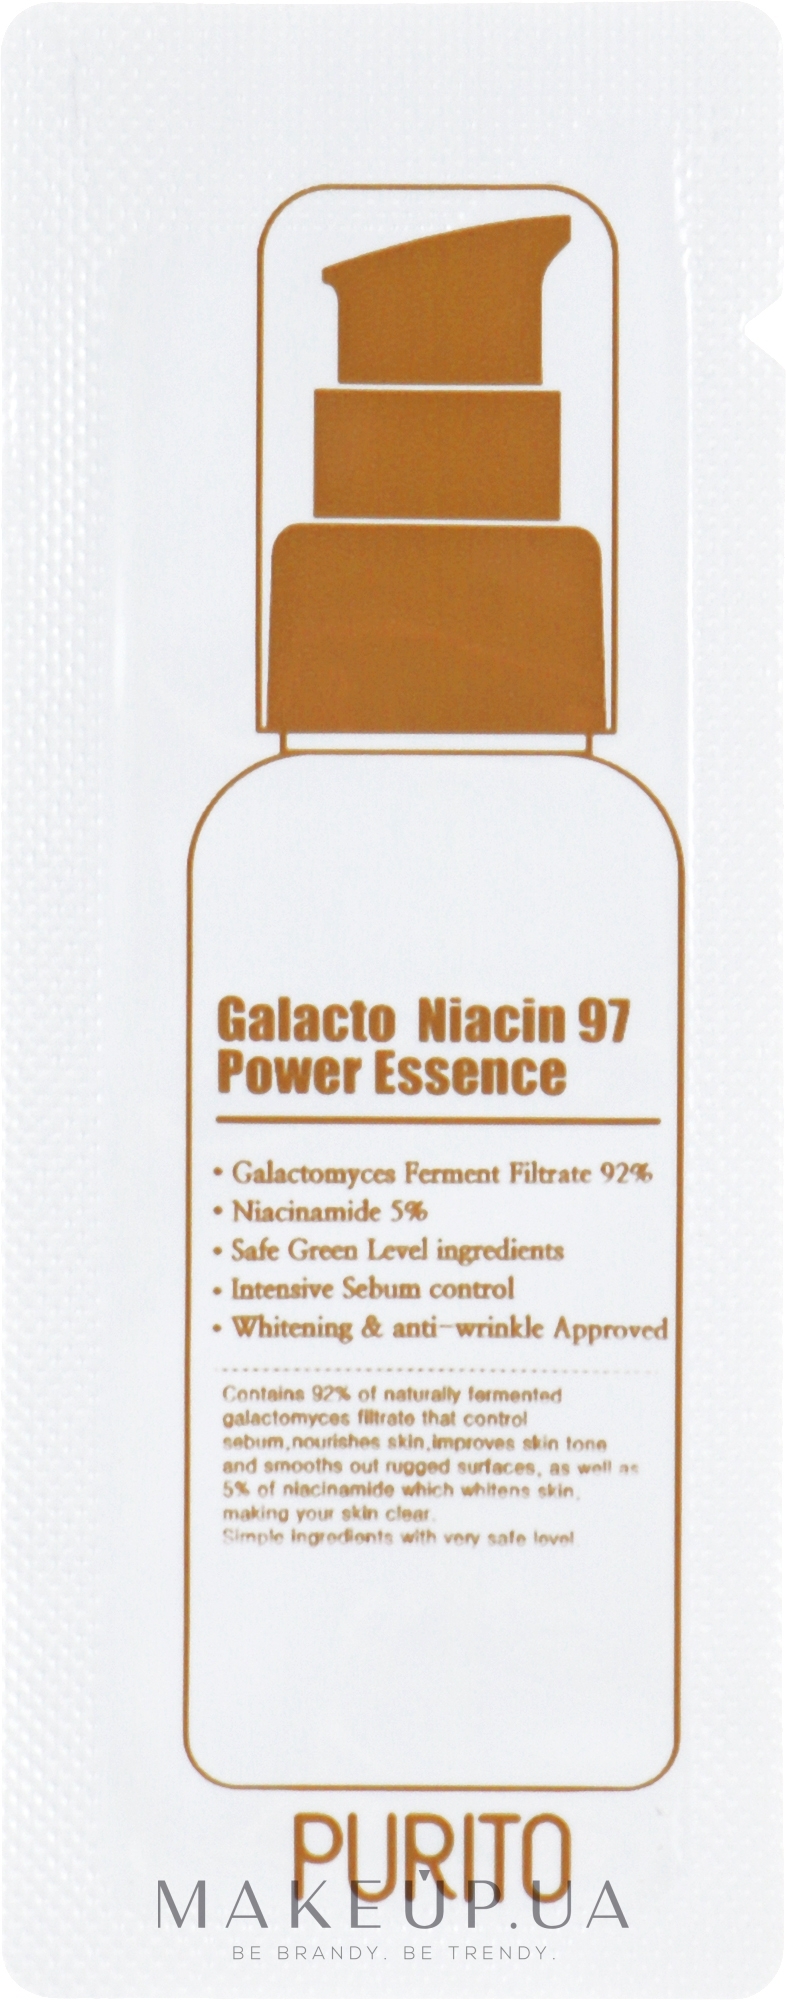 Відновлювальна есенція для обличчя з екстрактом галактомісісу - Purito Galacto Niacin 97 Power Essence (пробник) — фото 1ml